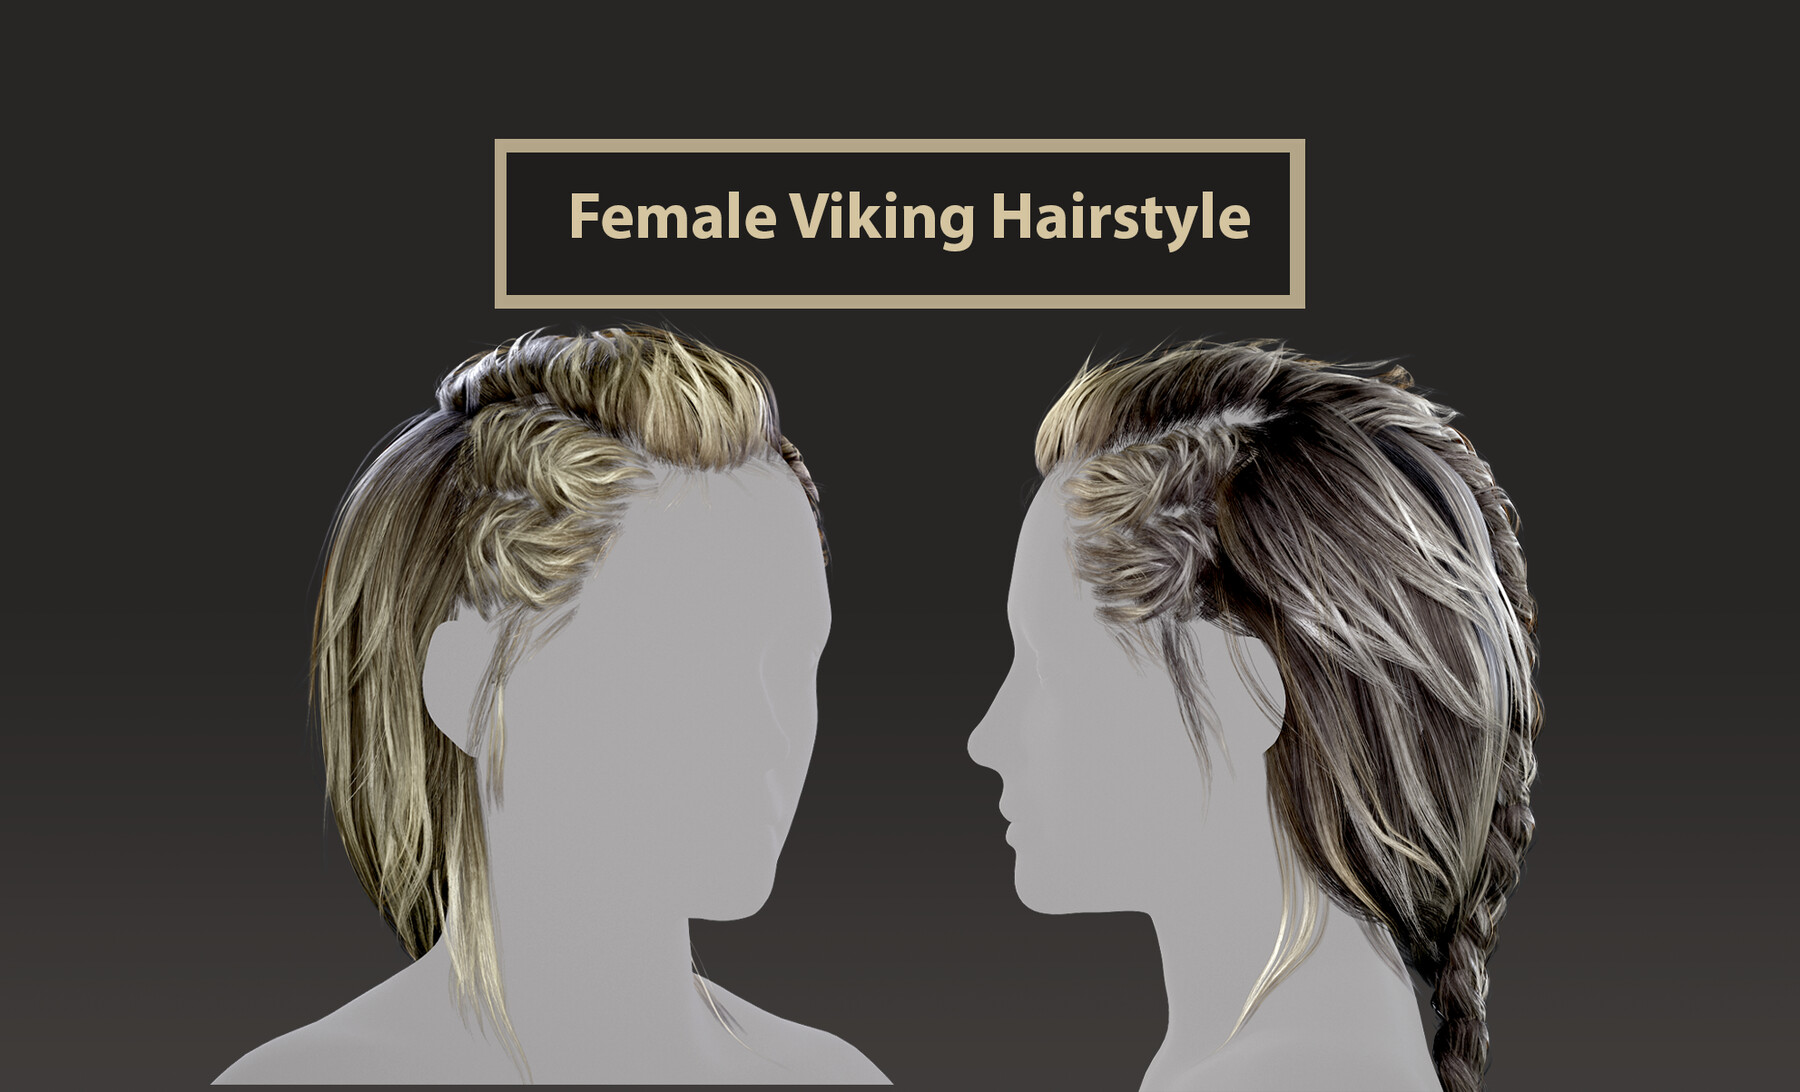 ArtStation - Female hair